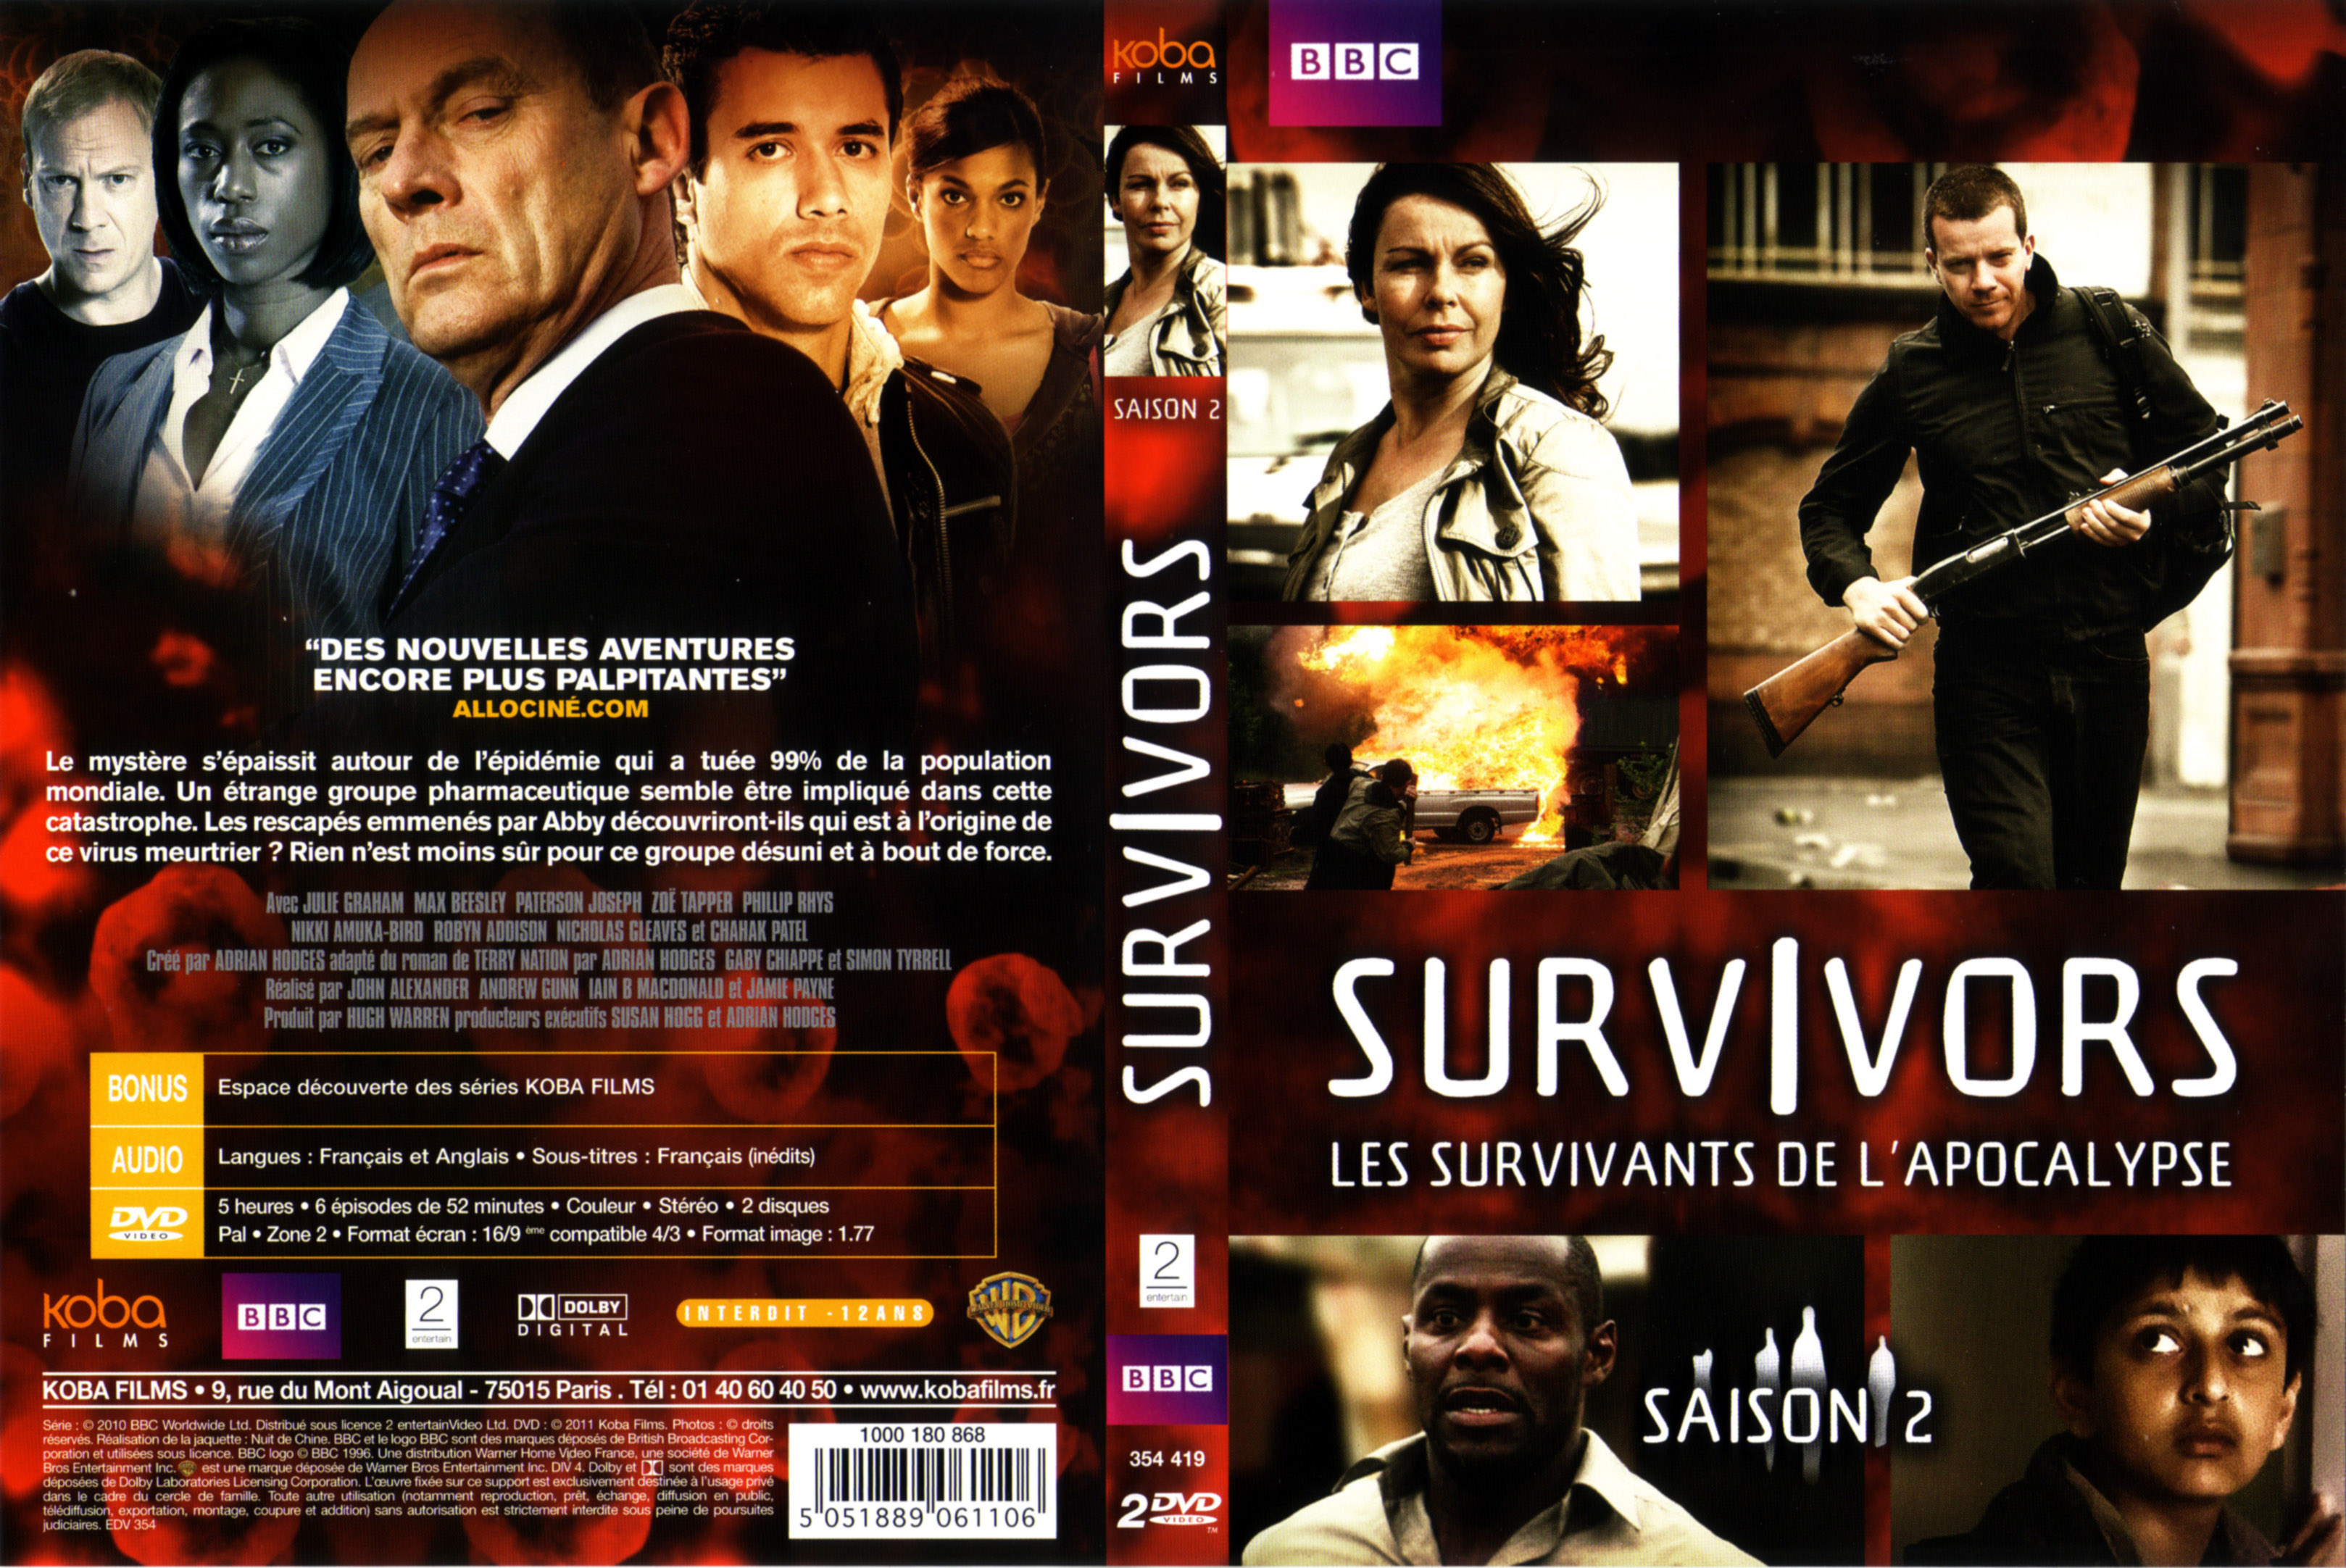 Jaquette DVD Survivors Saison 2